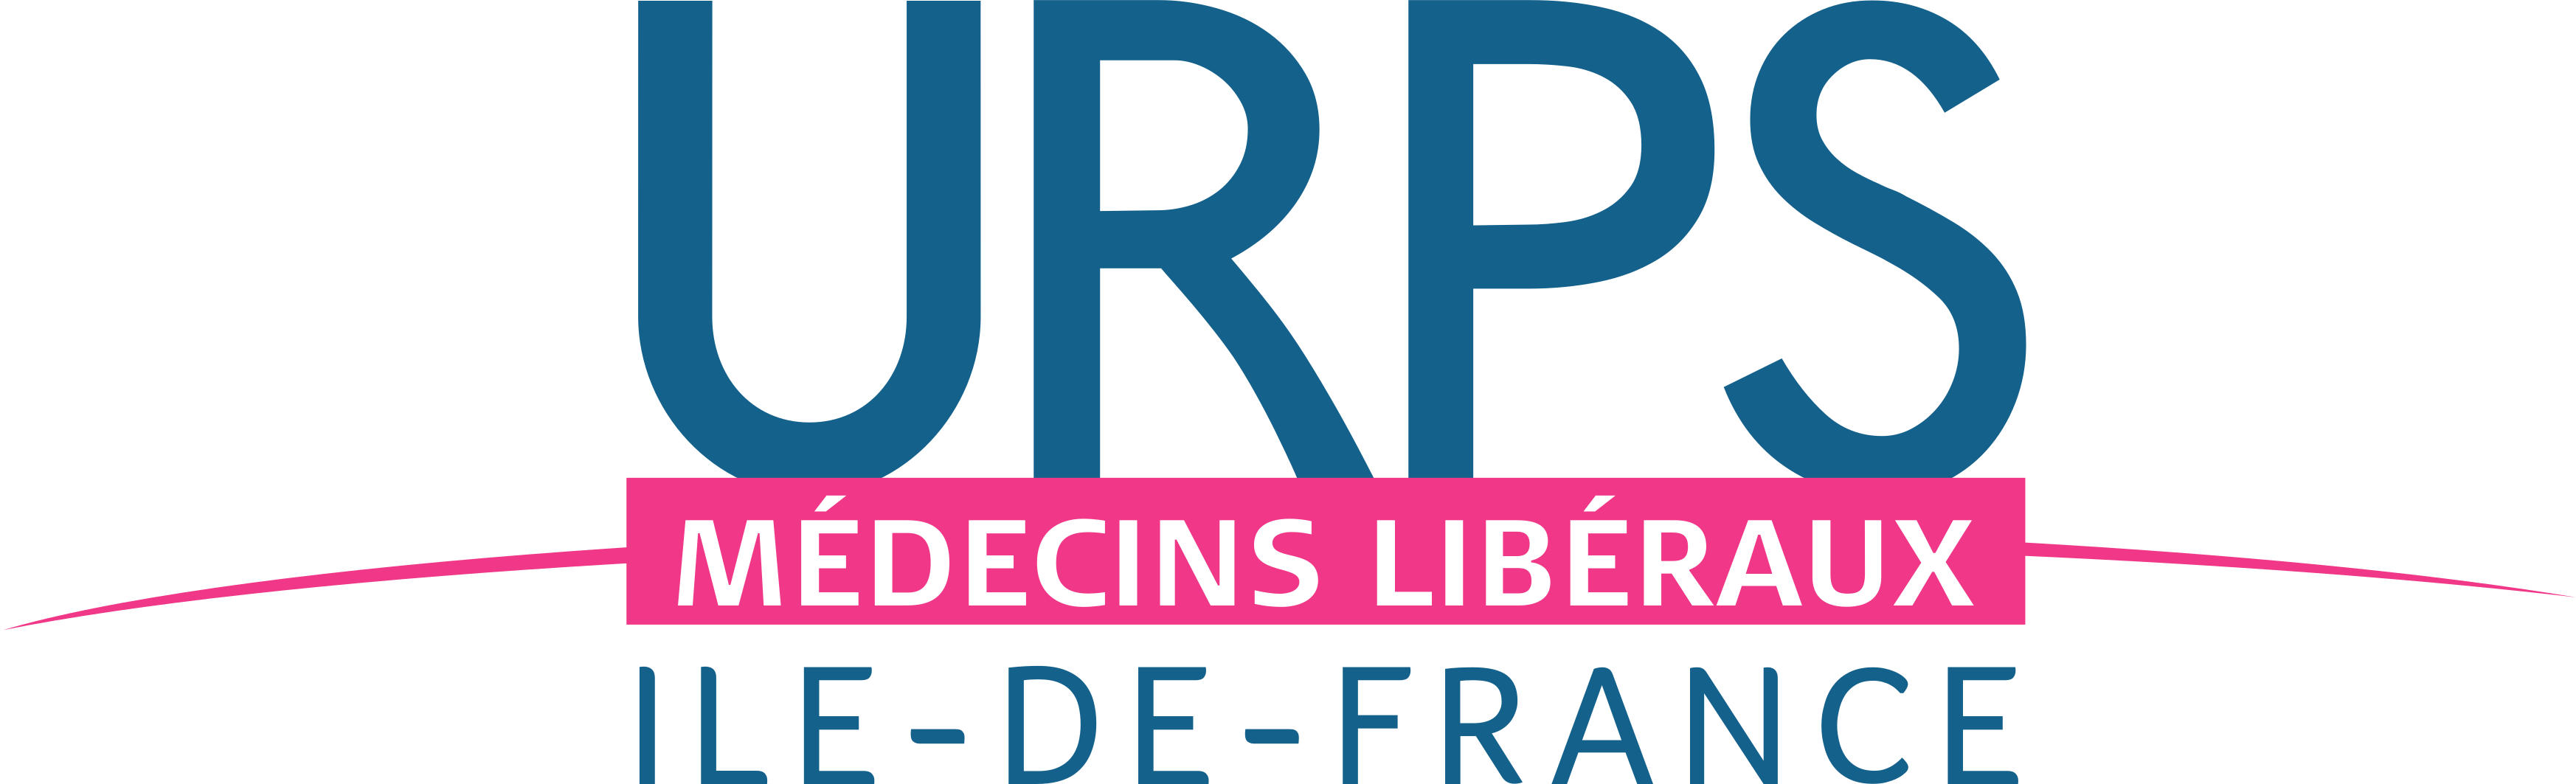 Logo exposant URPS MÉDECINS LIBÉRAUX ILE-DE-FRANCE